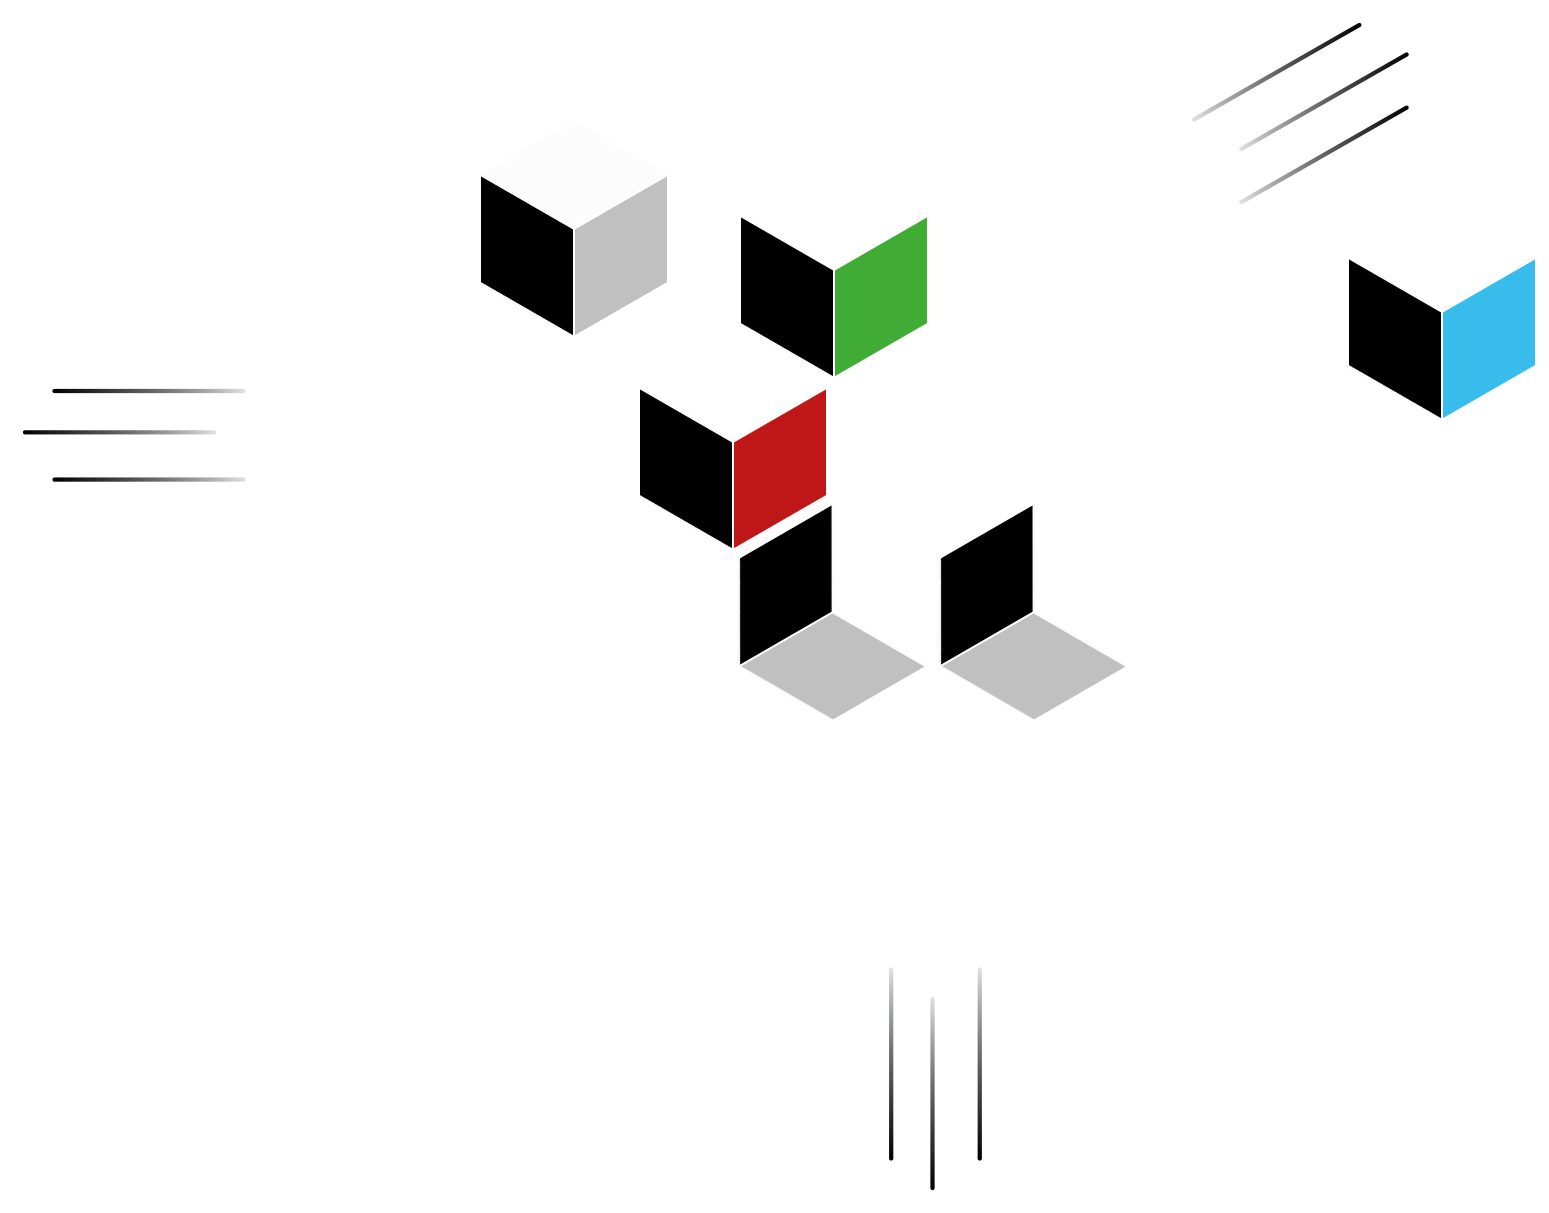 Gambi-M à Bagnols sur Cèze dans le Gard - In-Replica - répliques virtuelles 3D, ingénierie 3D, BIM, applicatifs métiers pour l'industrie et le nucléaire